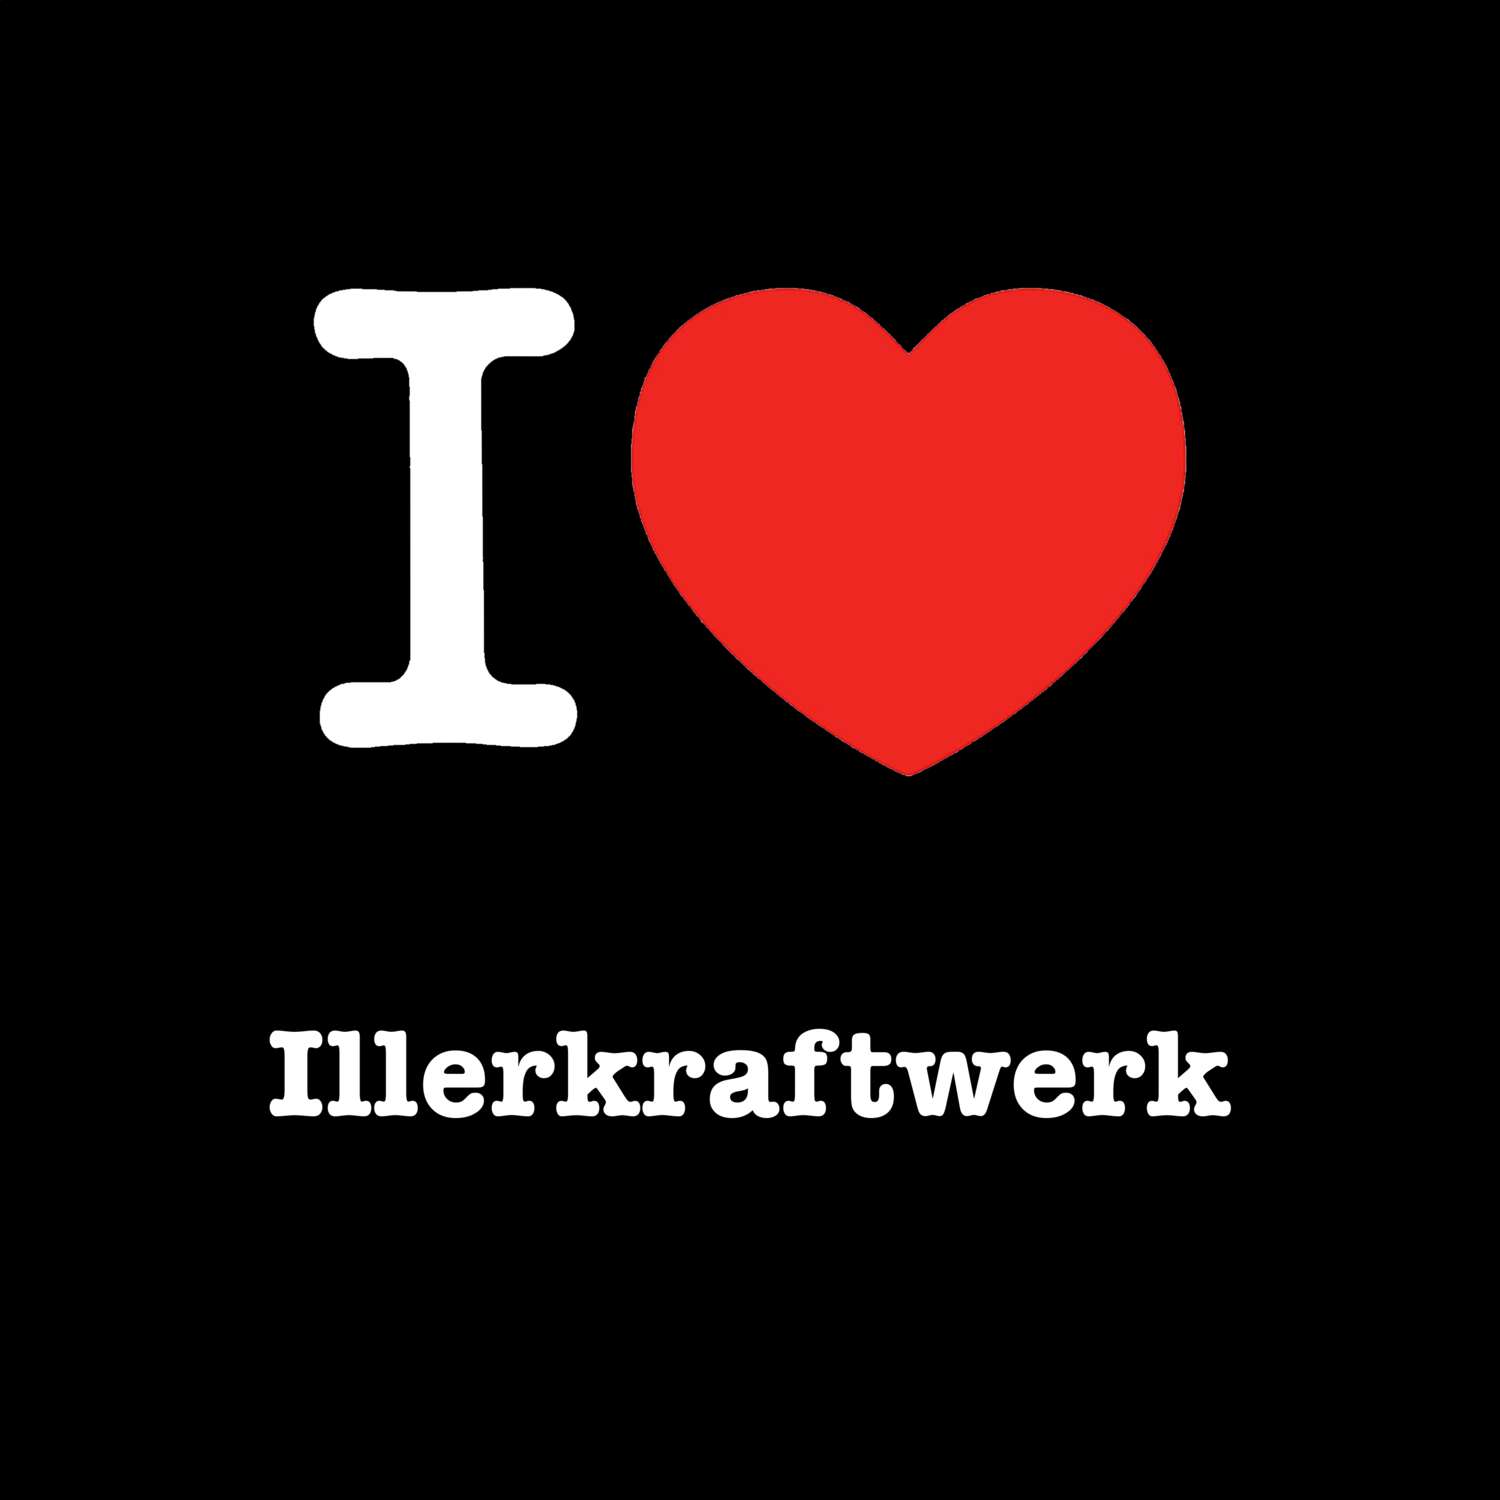 Illerkraftwerk T-Shirt »I love«